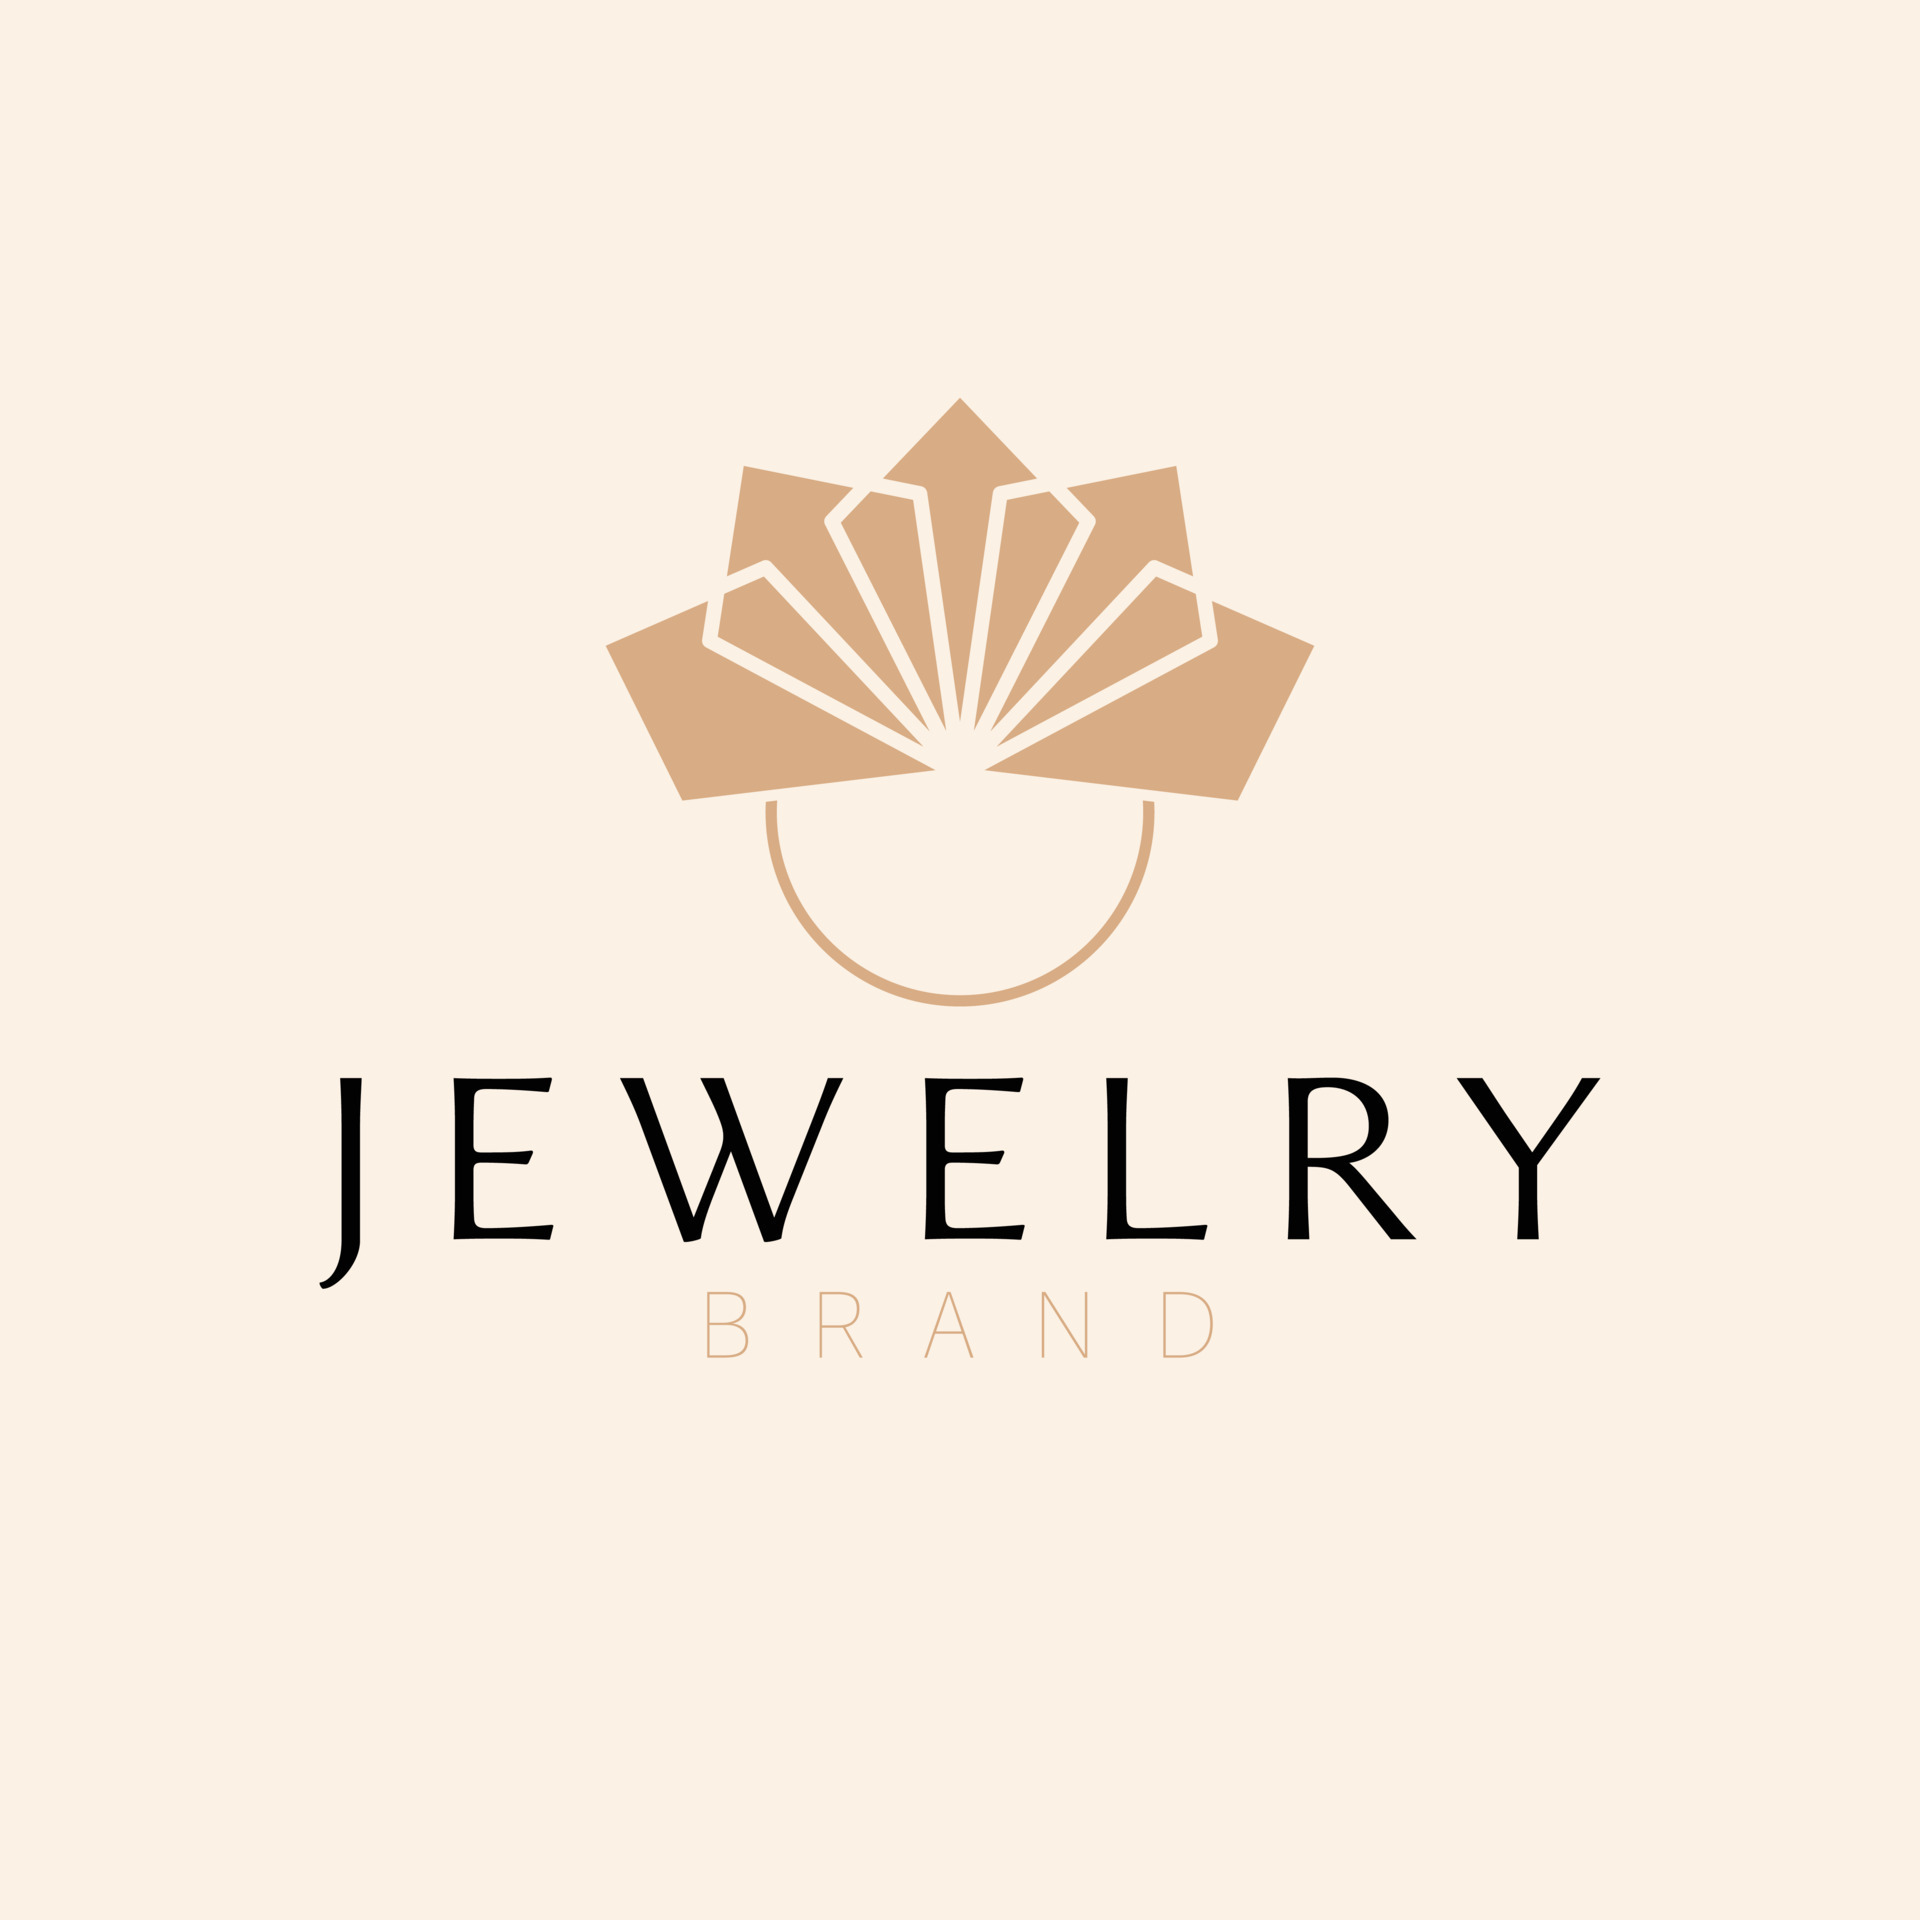 Jeveley Brand